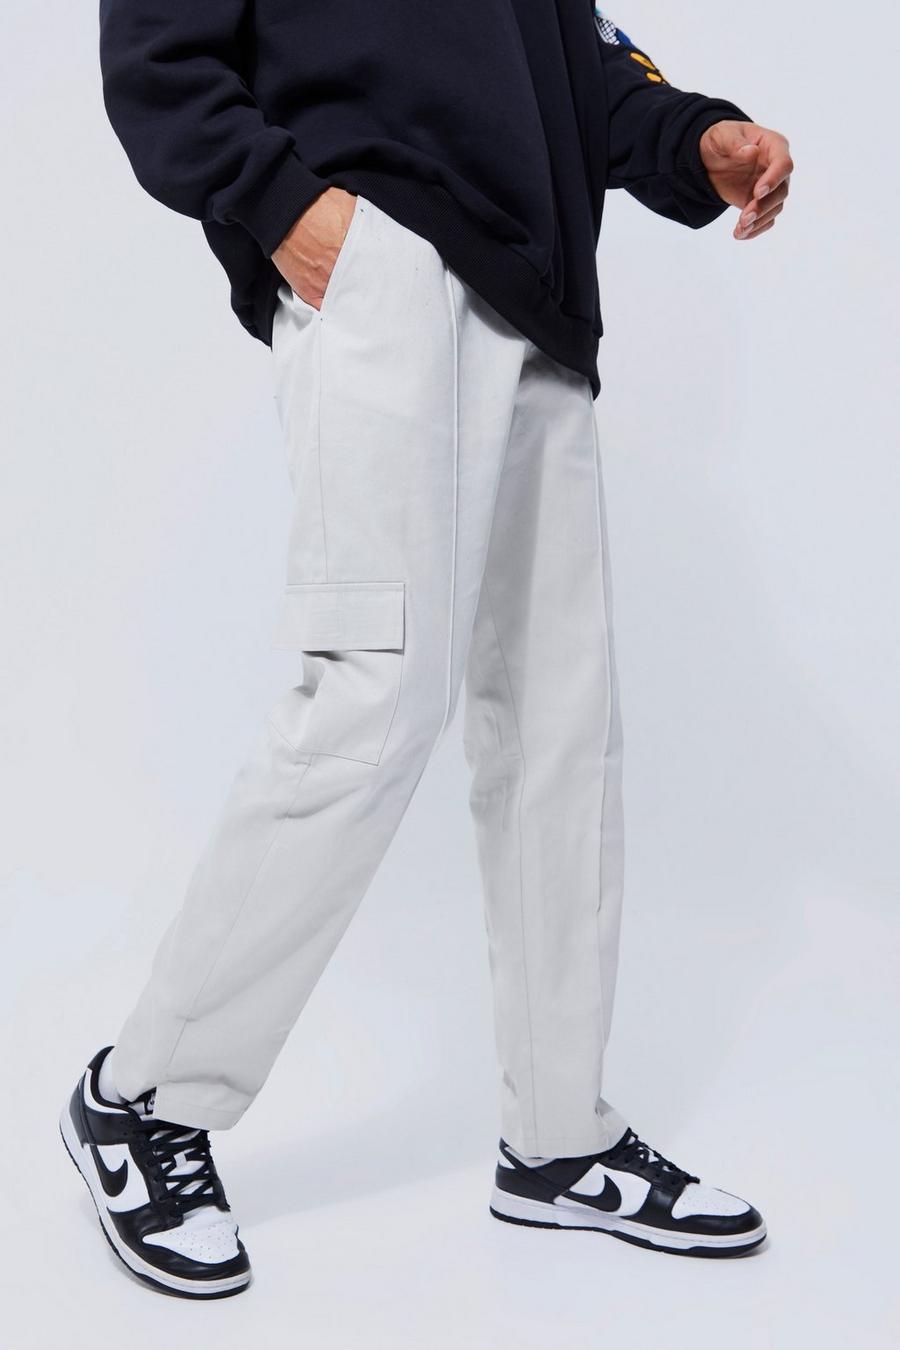 Pantalón Tall chino elegante cargo, Grey gris